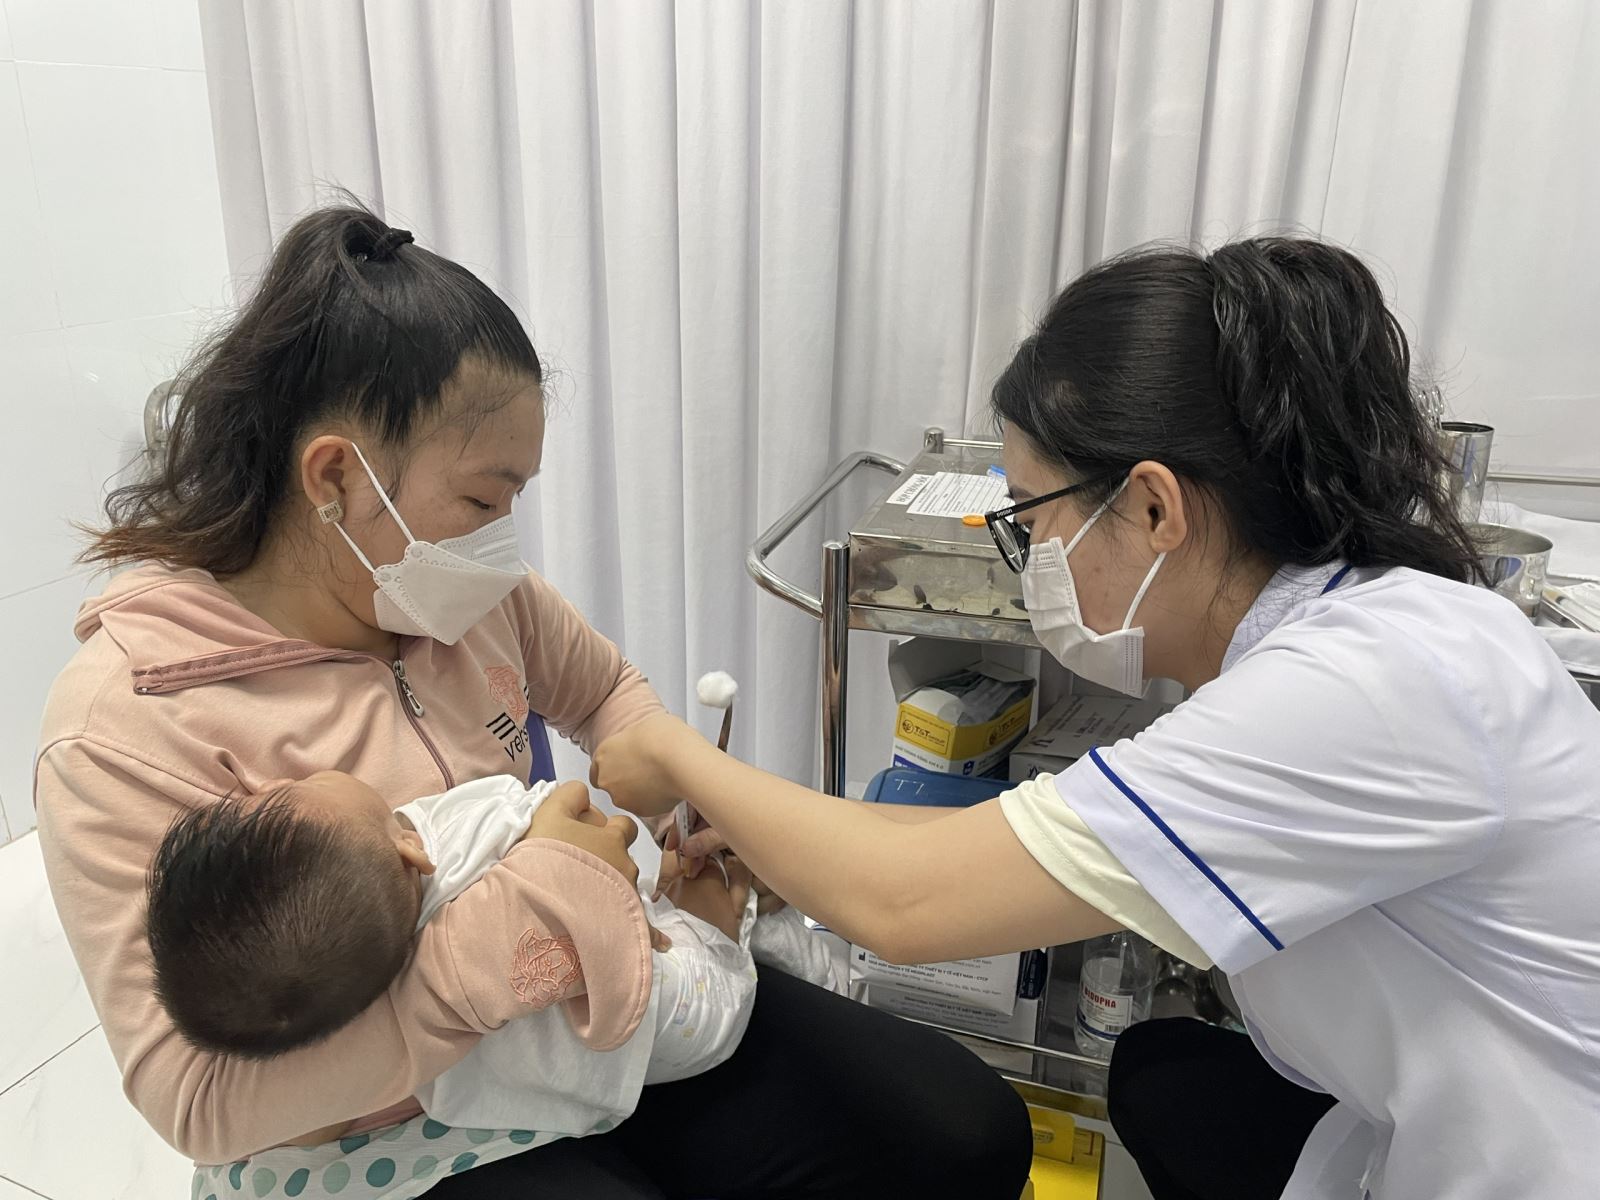 TP Hồ Chí Minh: Trên 30.000 trẻ dưới 2 tuổi chưa được tiêm chủng đầy đủ, nguy cơ xuất hiện nhiều dịch bệnh - ảnh 1